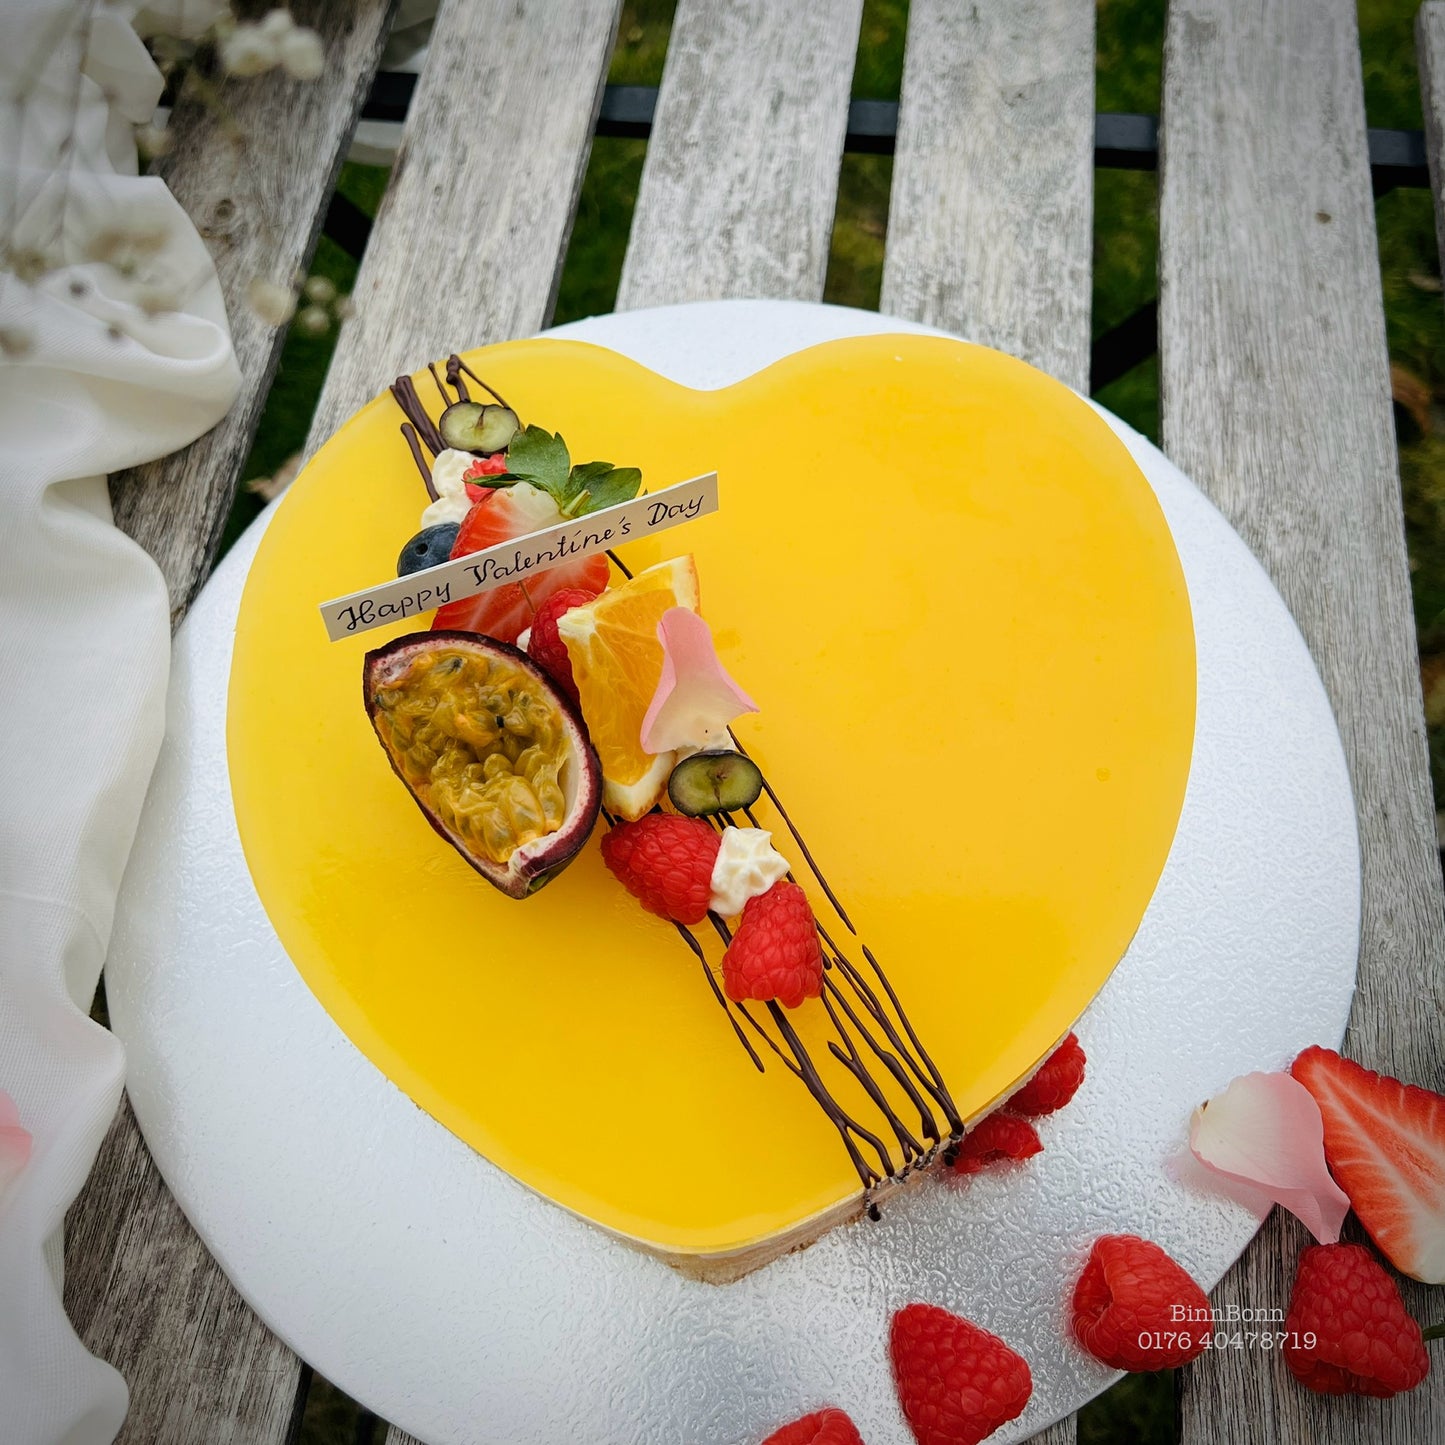 38. Torte "I give you my heart" mit Maracuja-Orangenspiegel und frischen Früchten 24 cm